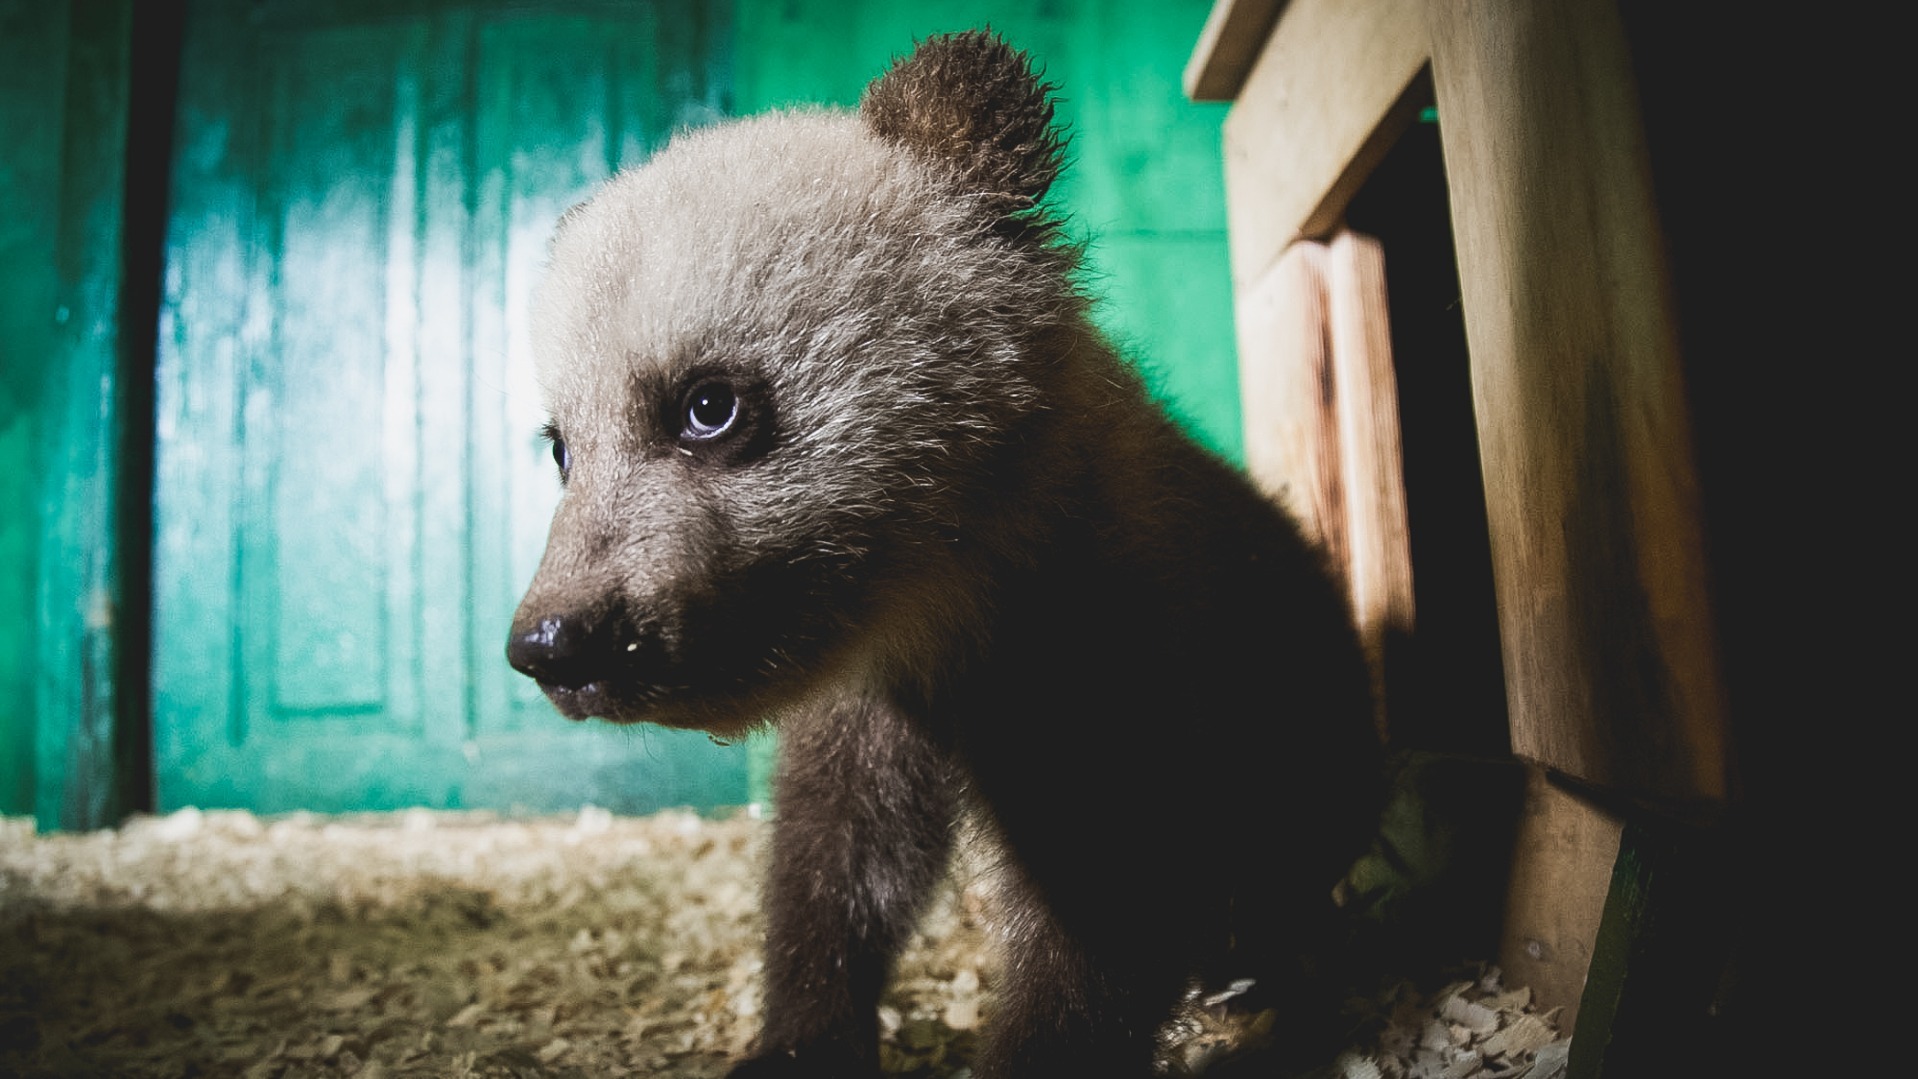 В ХМАО браконьеры застрелили медвежонка на обочине автодороги при свидетелях